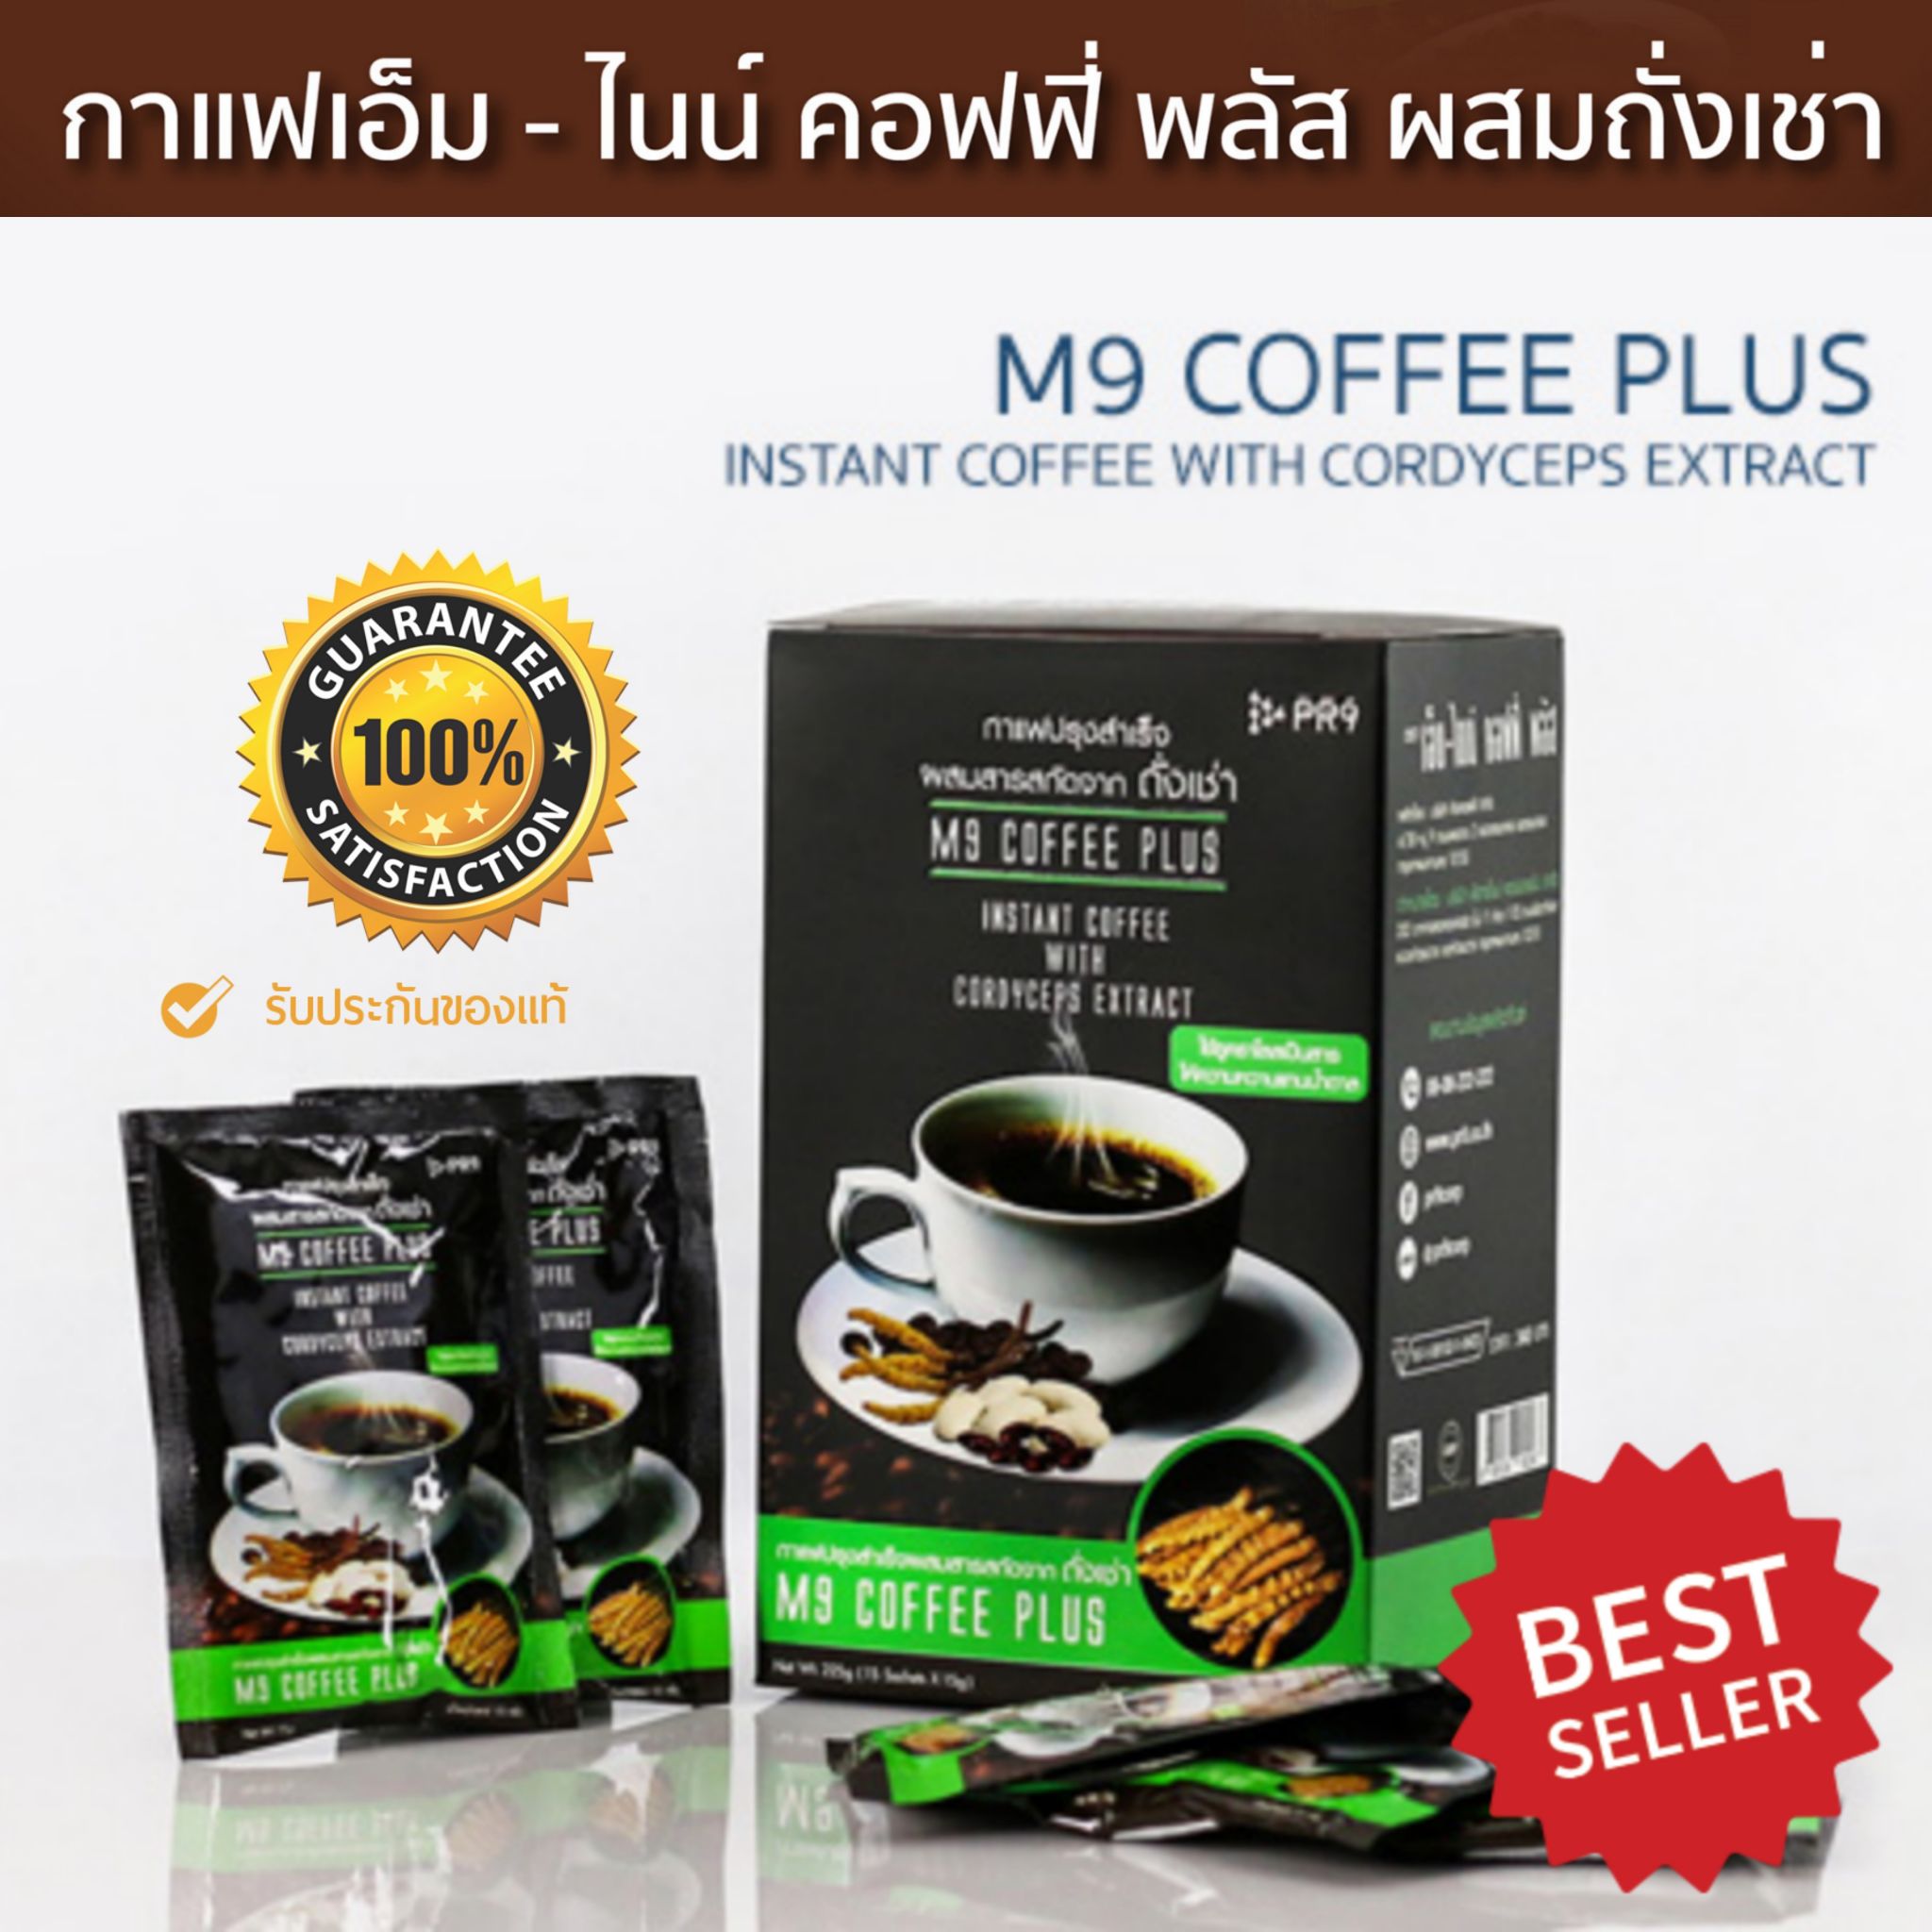 กาแฟเพื่อสุขภาพ M9 Coffee Plus กาแฟถั่งเช่า กาแฟสำเร็จรูป ช่วยบำรุงร่างกาย บำรุงกำลัง ลดไขมันในเลือด เสริมสมรรถภาพ เบาหวานทานได้ 1กล่อง 15ซอง